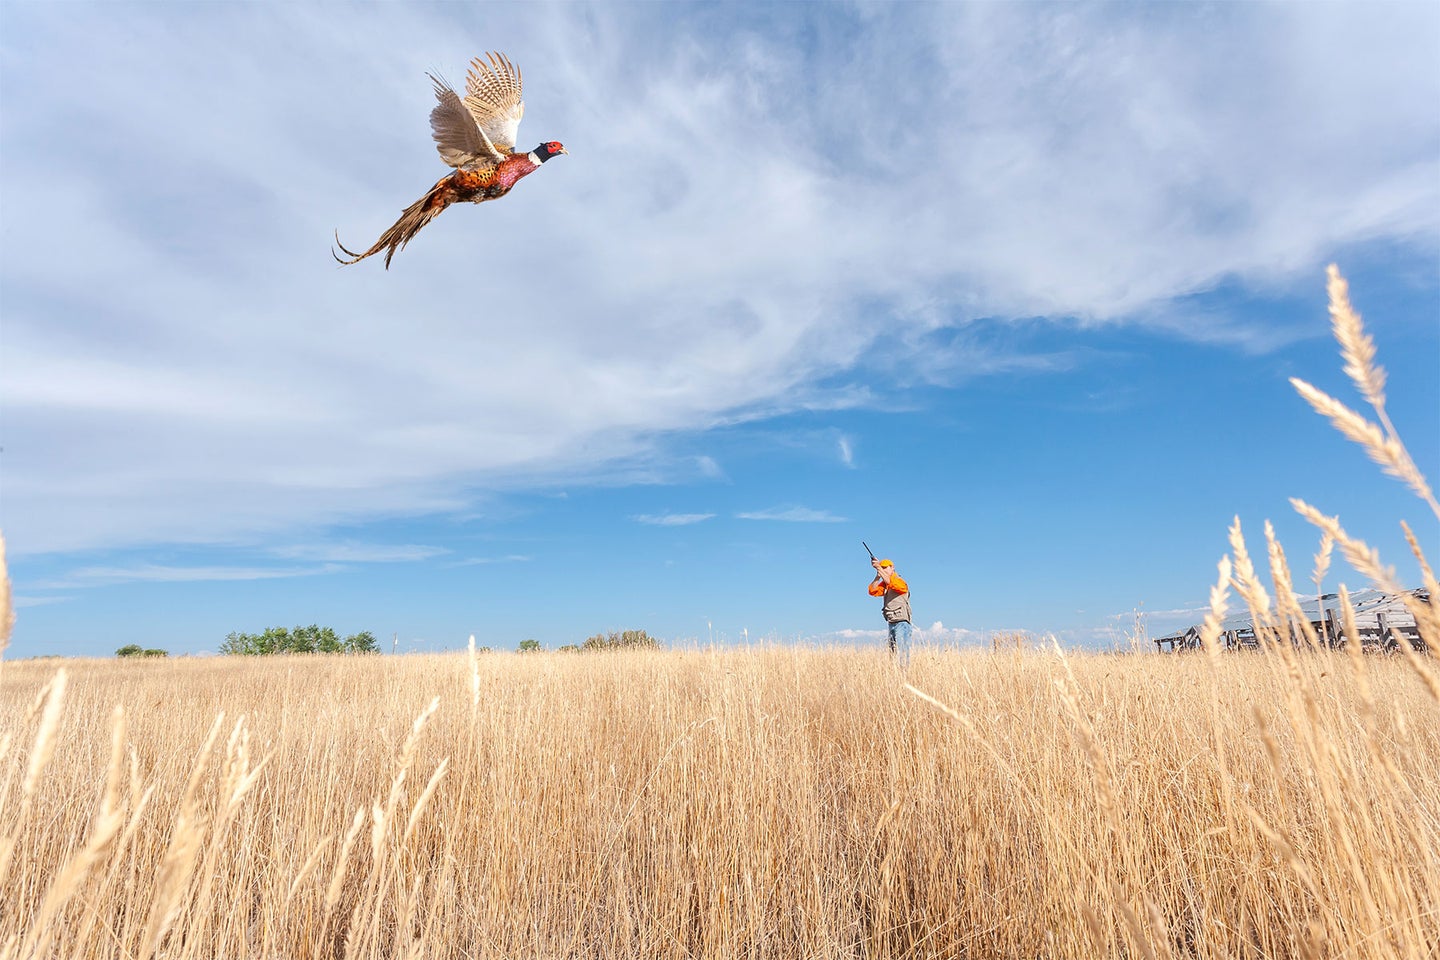 A pheasant flies through an agricultural field while a hunter prepares to shoot.